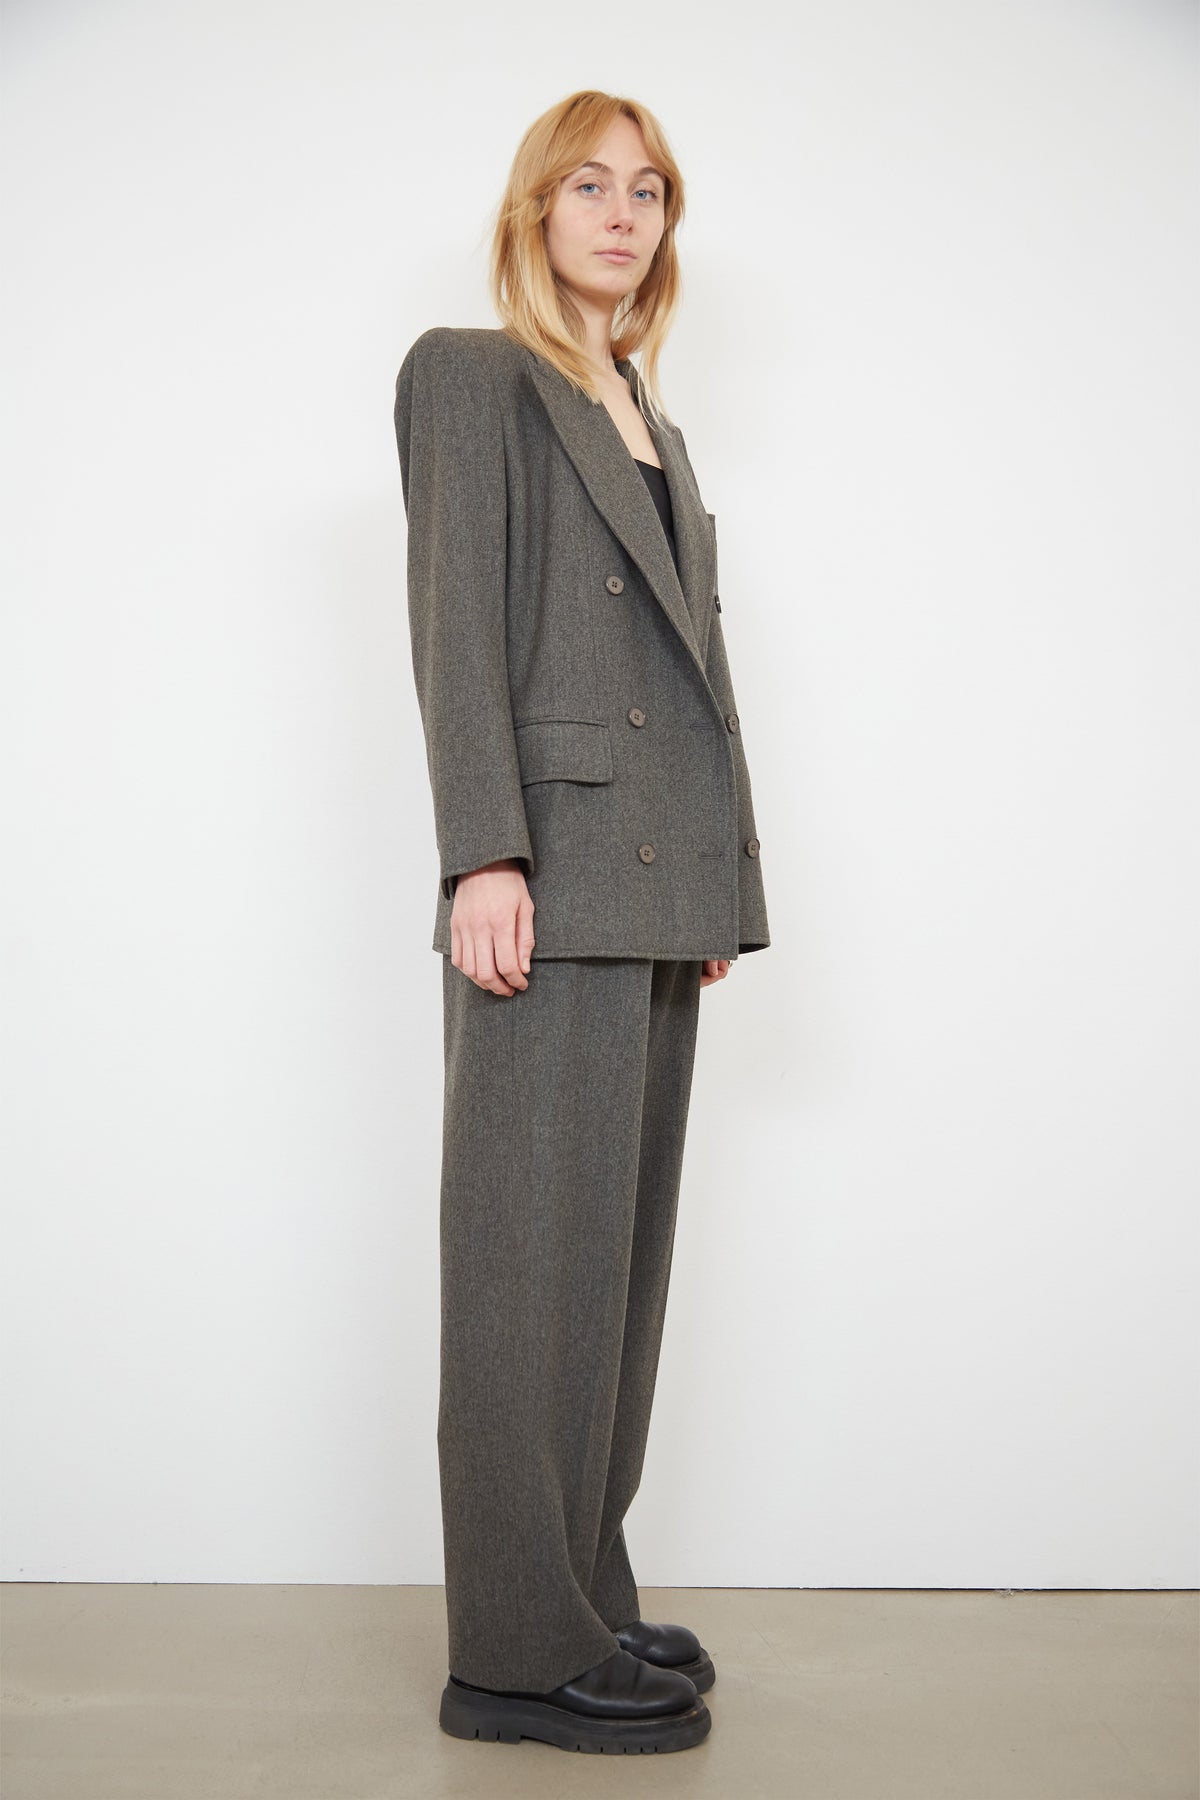 Yves Saint Laurent suit